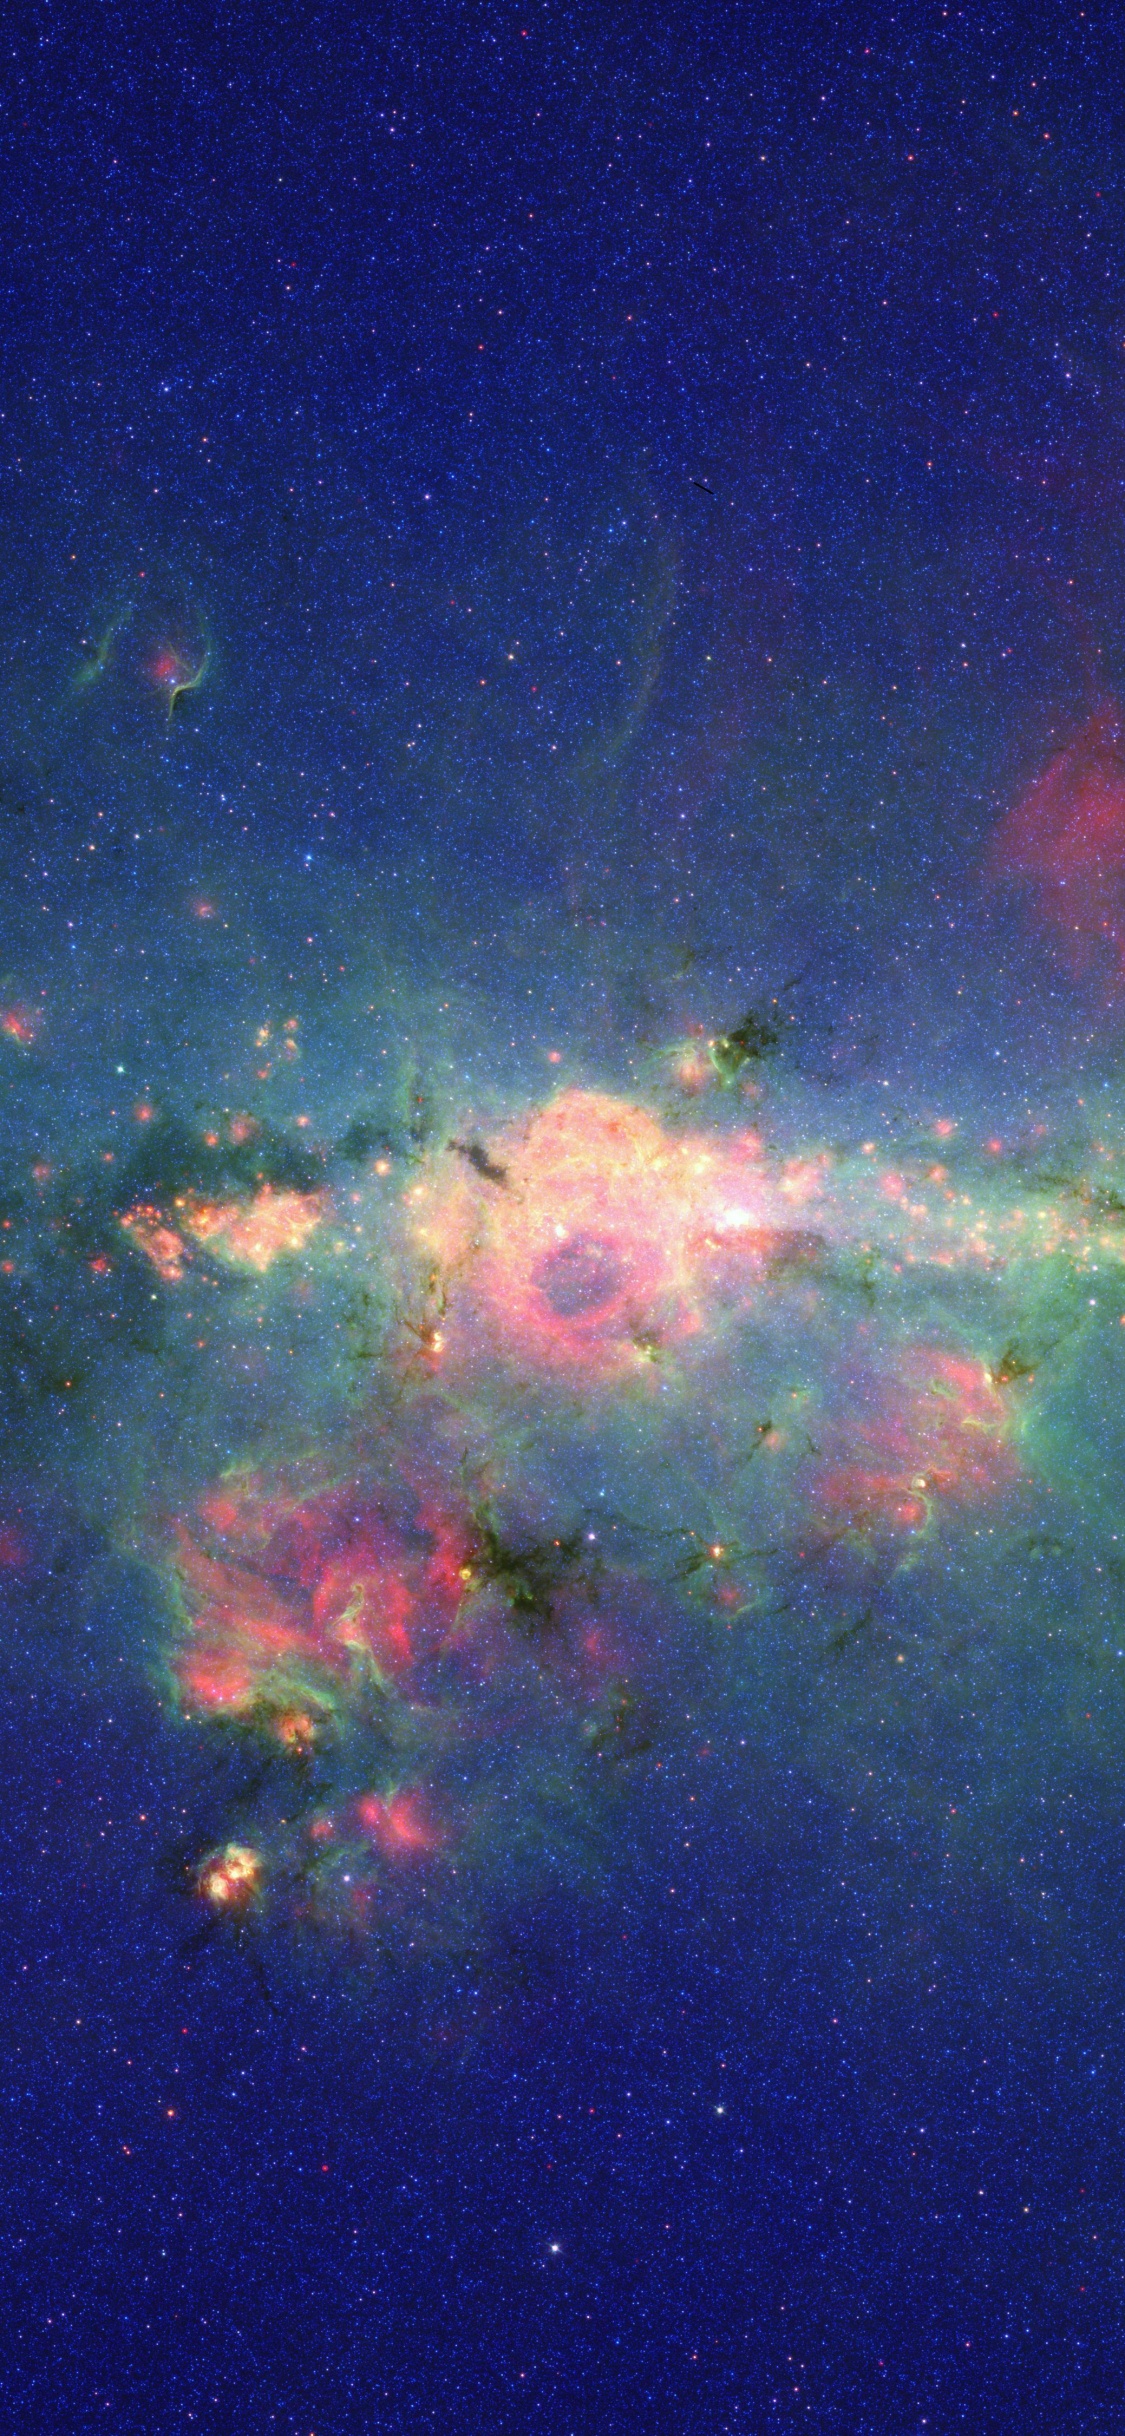 Abbildung Der Grünen Und Blauen Galaxie. Wallpaper in 1125x2436 Resolution